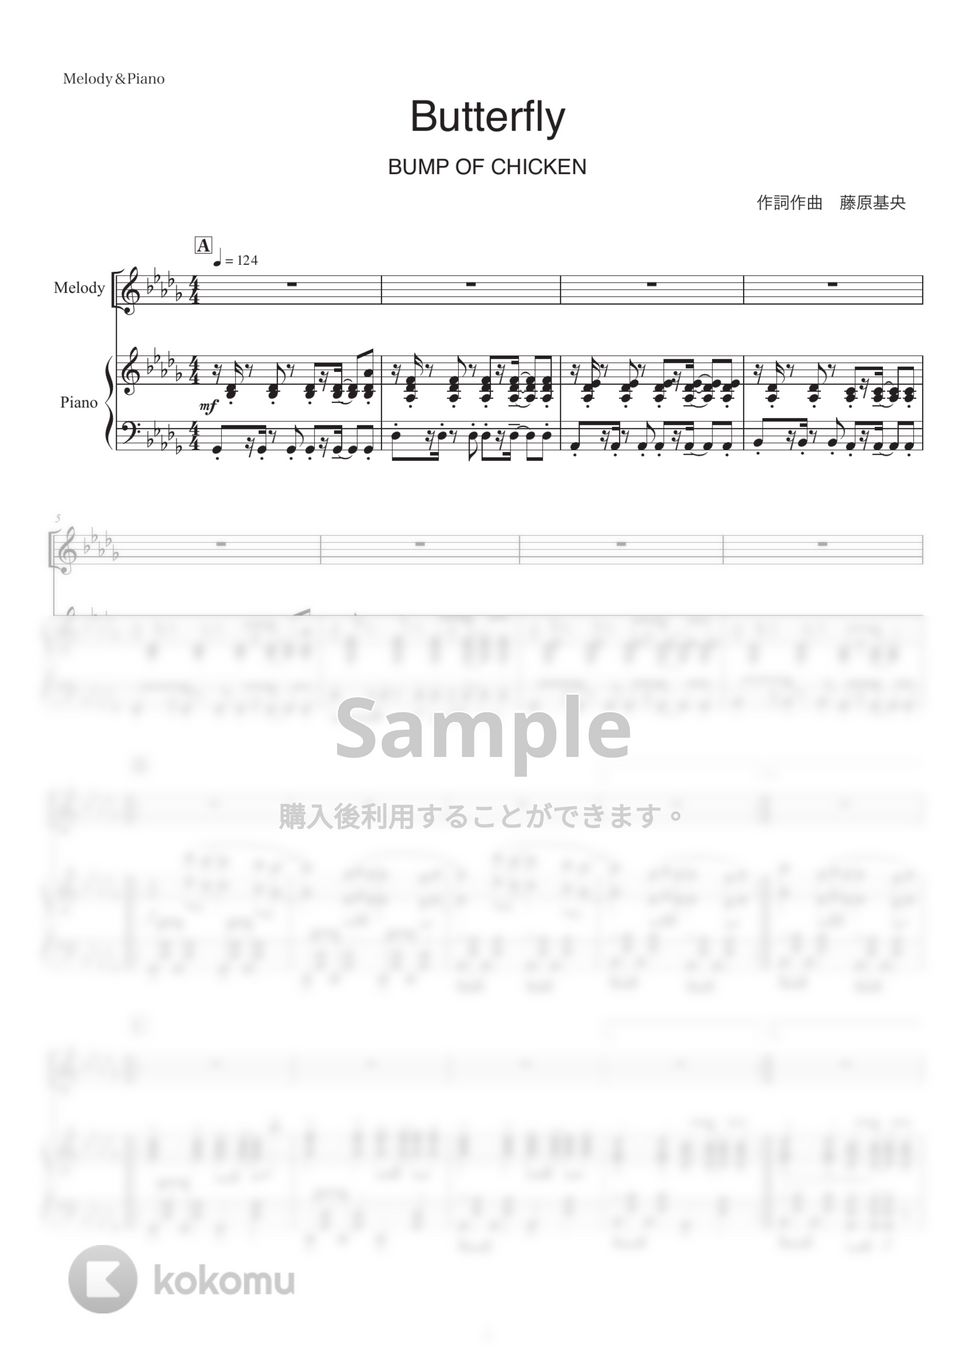 BUMP OF CHICKEN - Butterfly (ピアノ弾き語り) by otyazuke